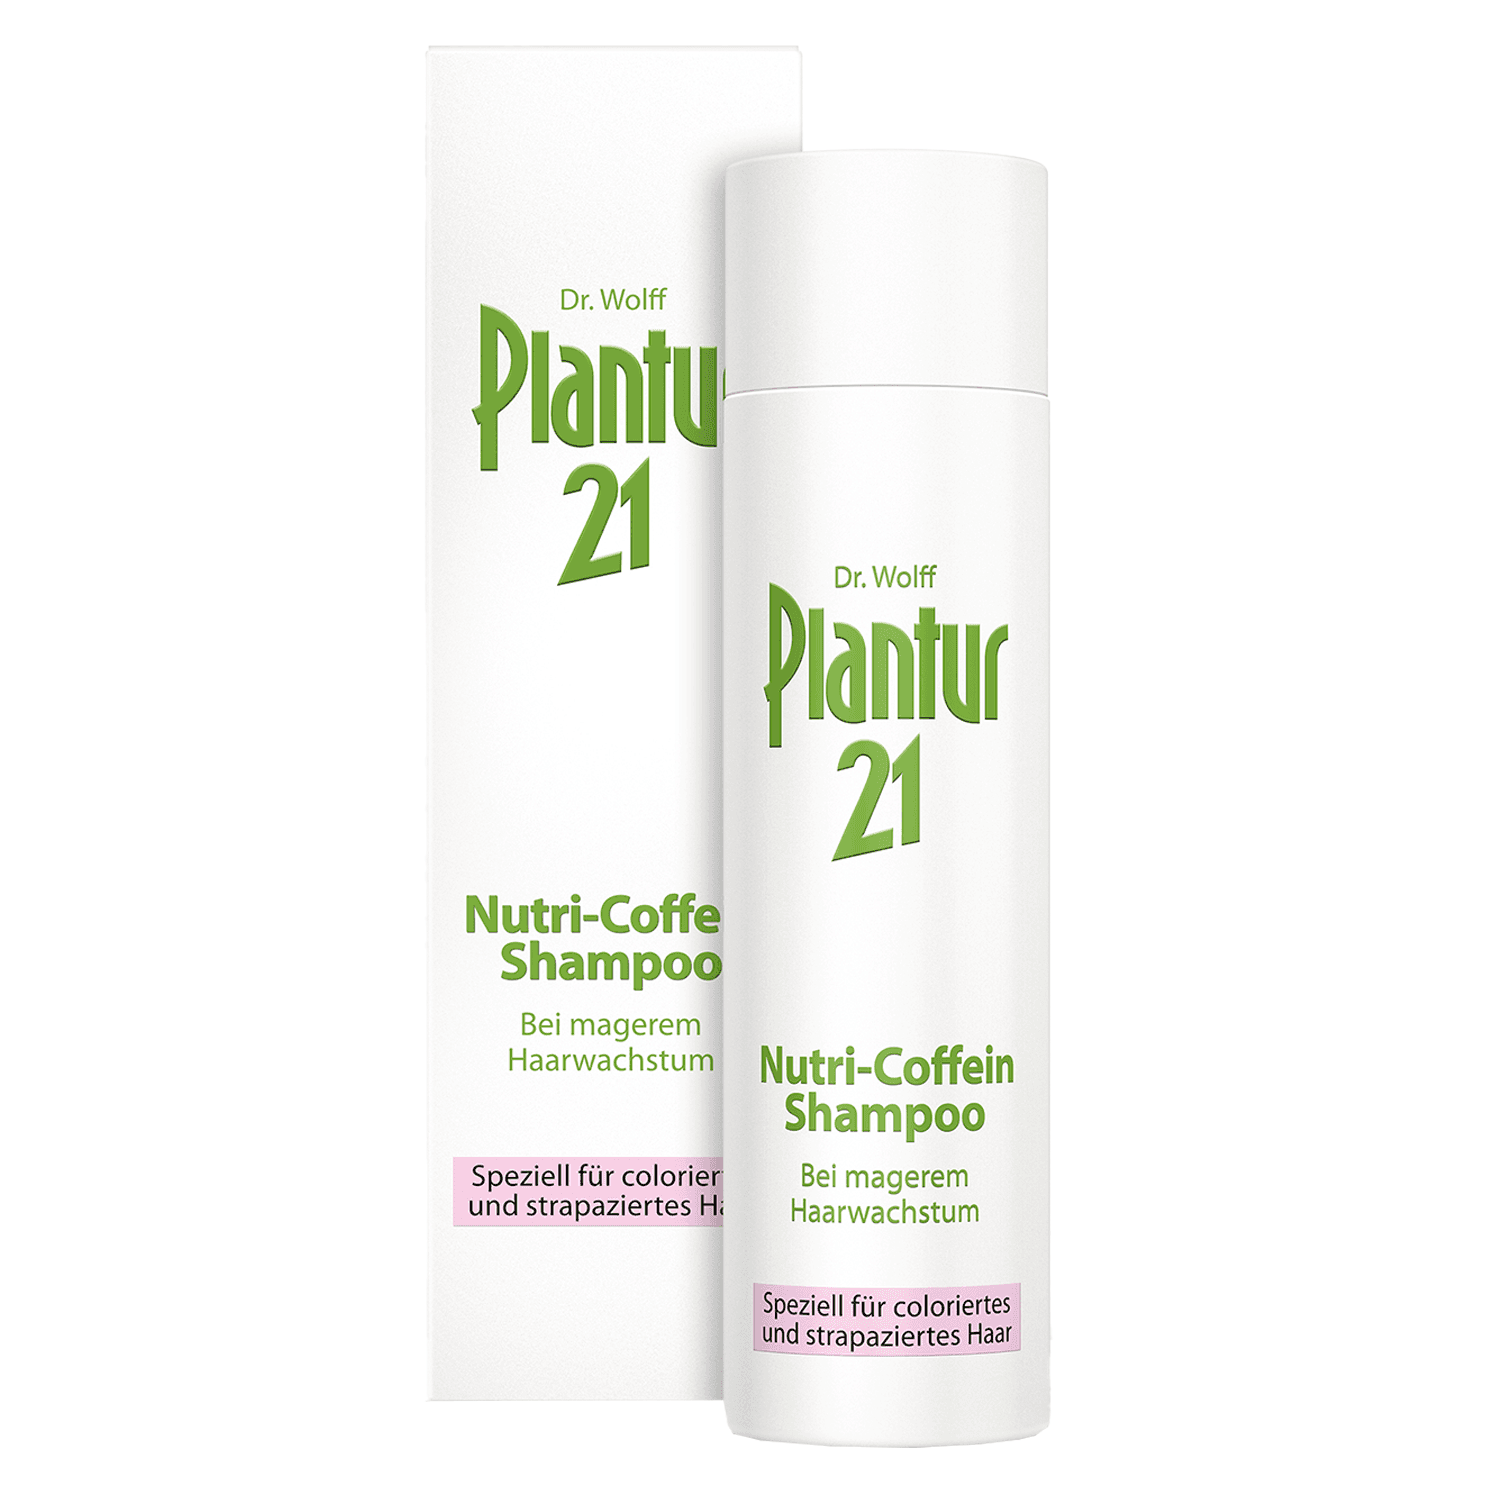 Plantur 21 - Nutri-Coffein Shampoo Speziell für coloriertes und strapaziertes Haar